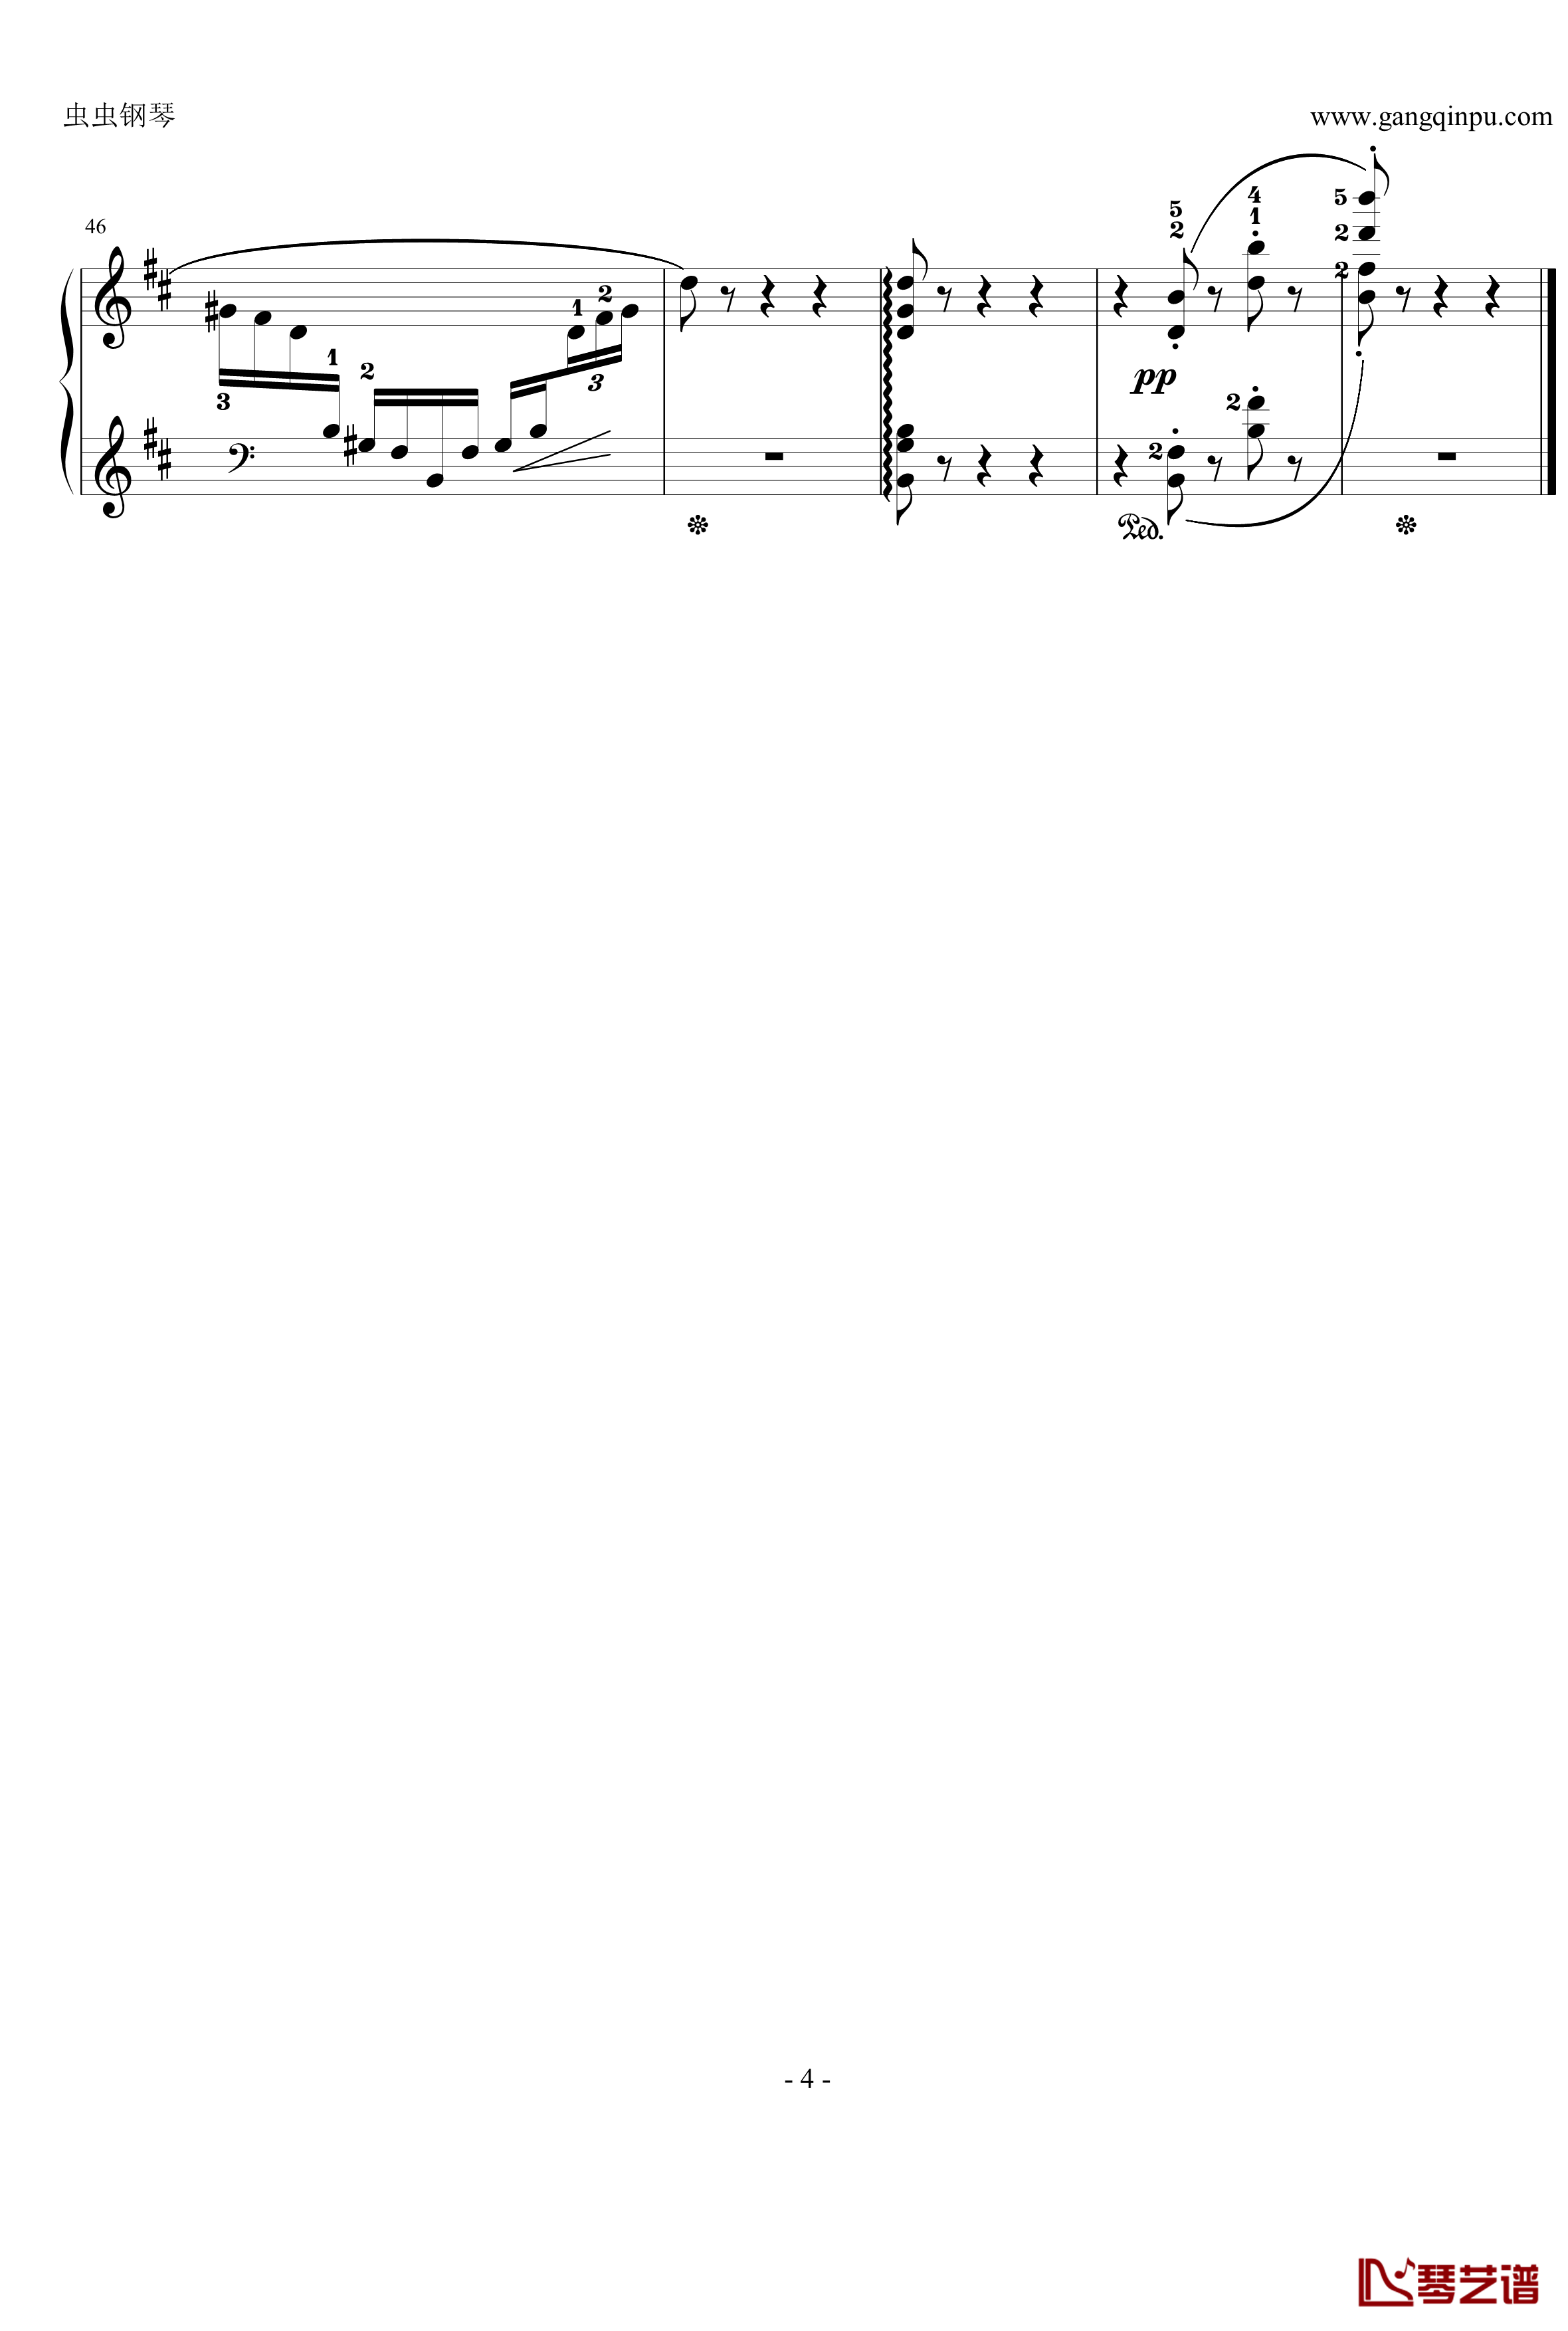 小溪钢琴谱-nyride-格里格4